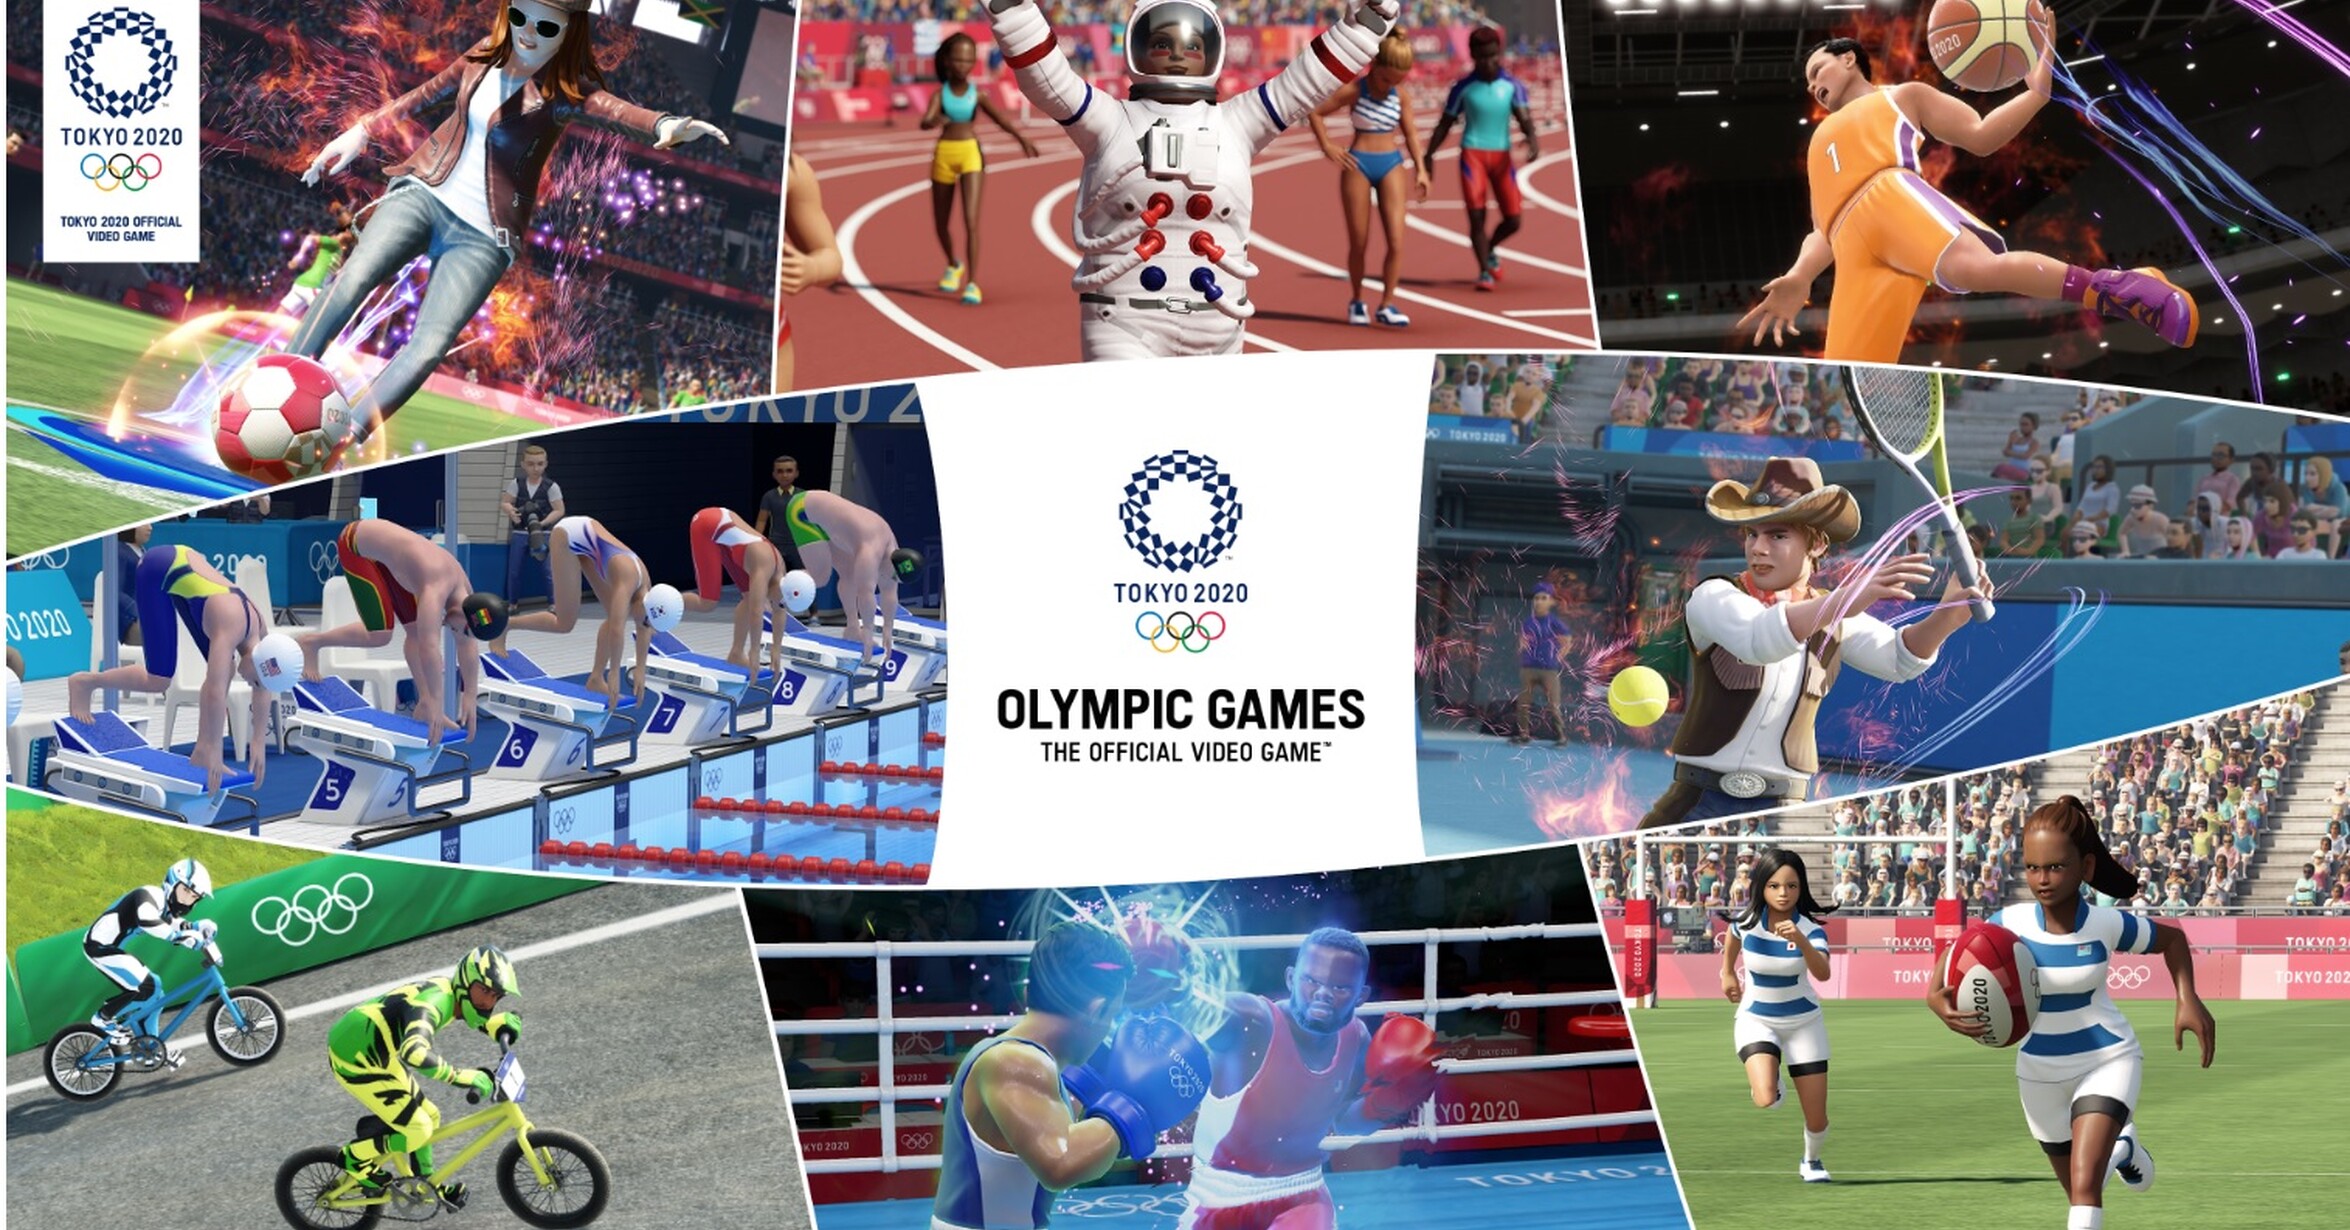 VRUTAL / Los Juegos Olímpicos Tokio 2020 – El Videojuego Oficial ya